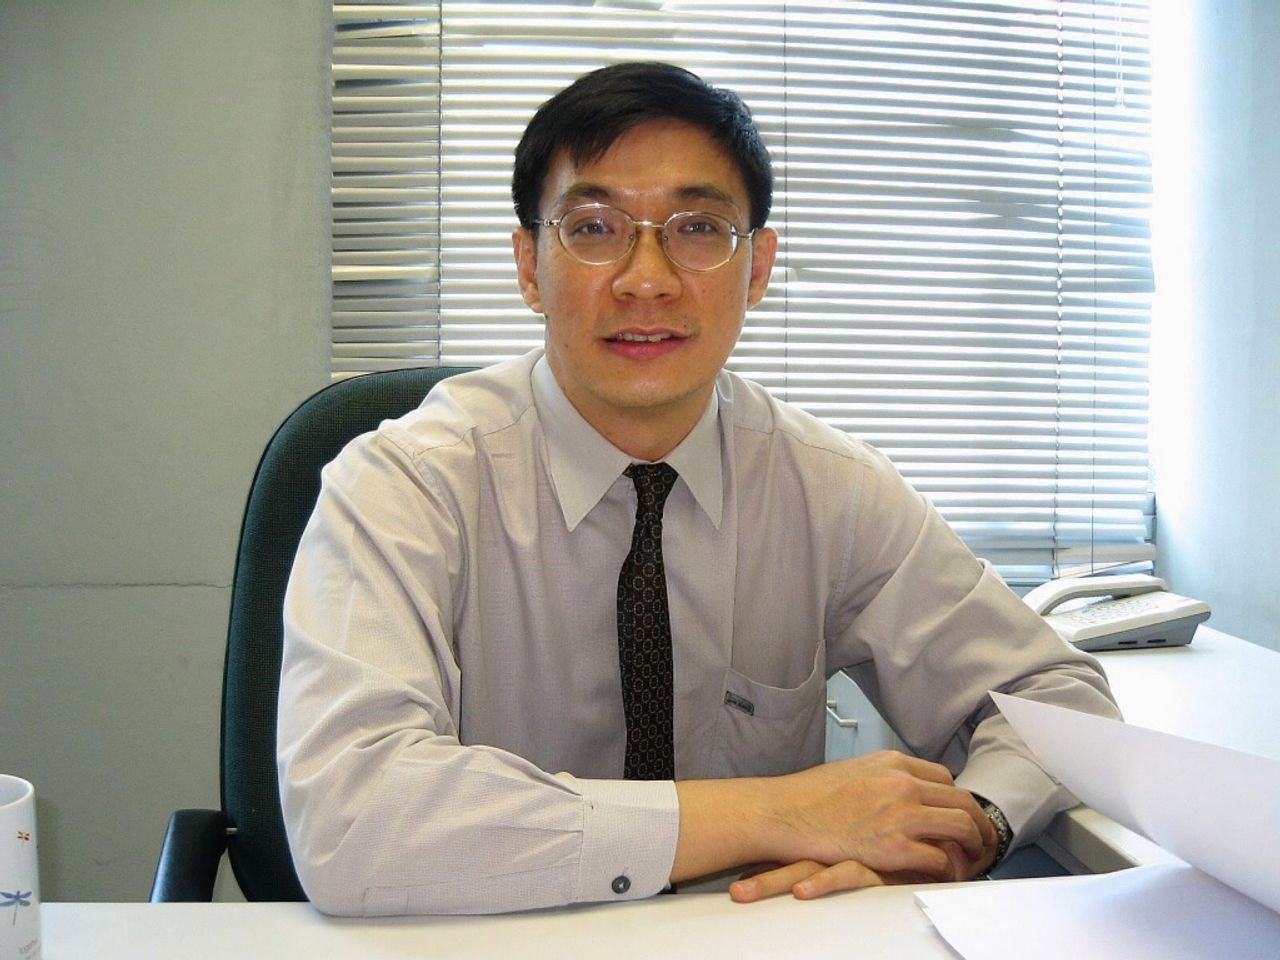 ดร.สมเกียรติ ตั้งกิจวานิชย์ ประธานสถาบันวิจัยเพื่อการพัฒนาประเทศ หรือ TDRI